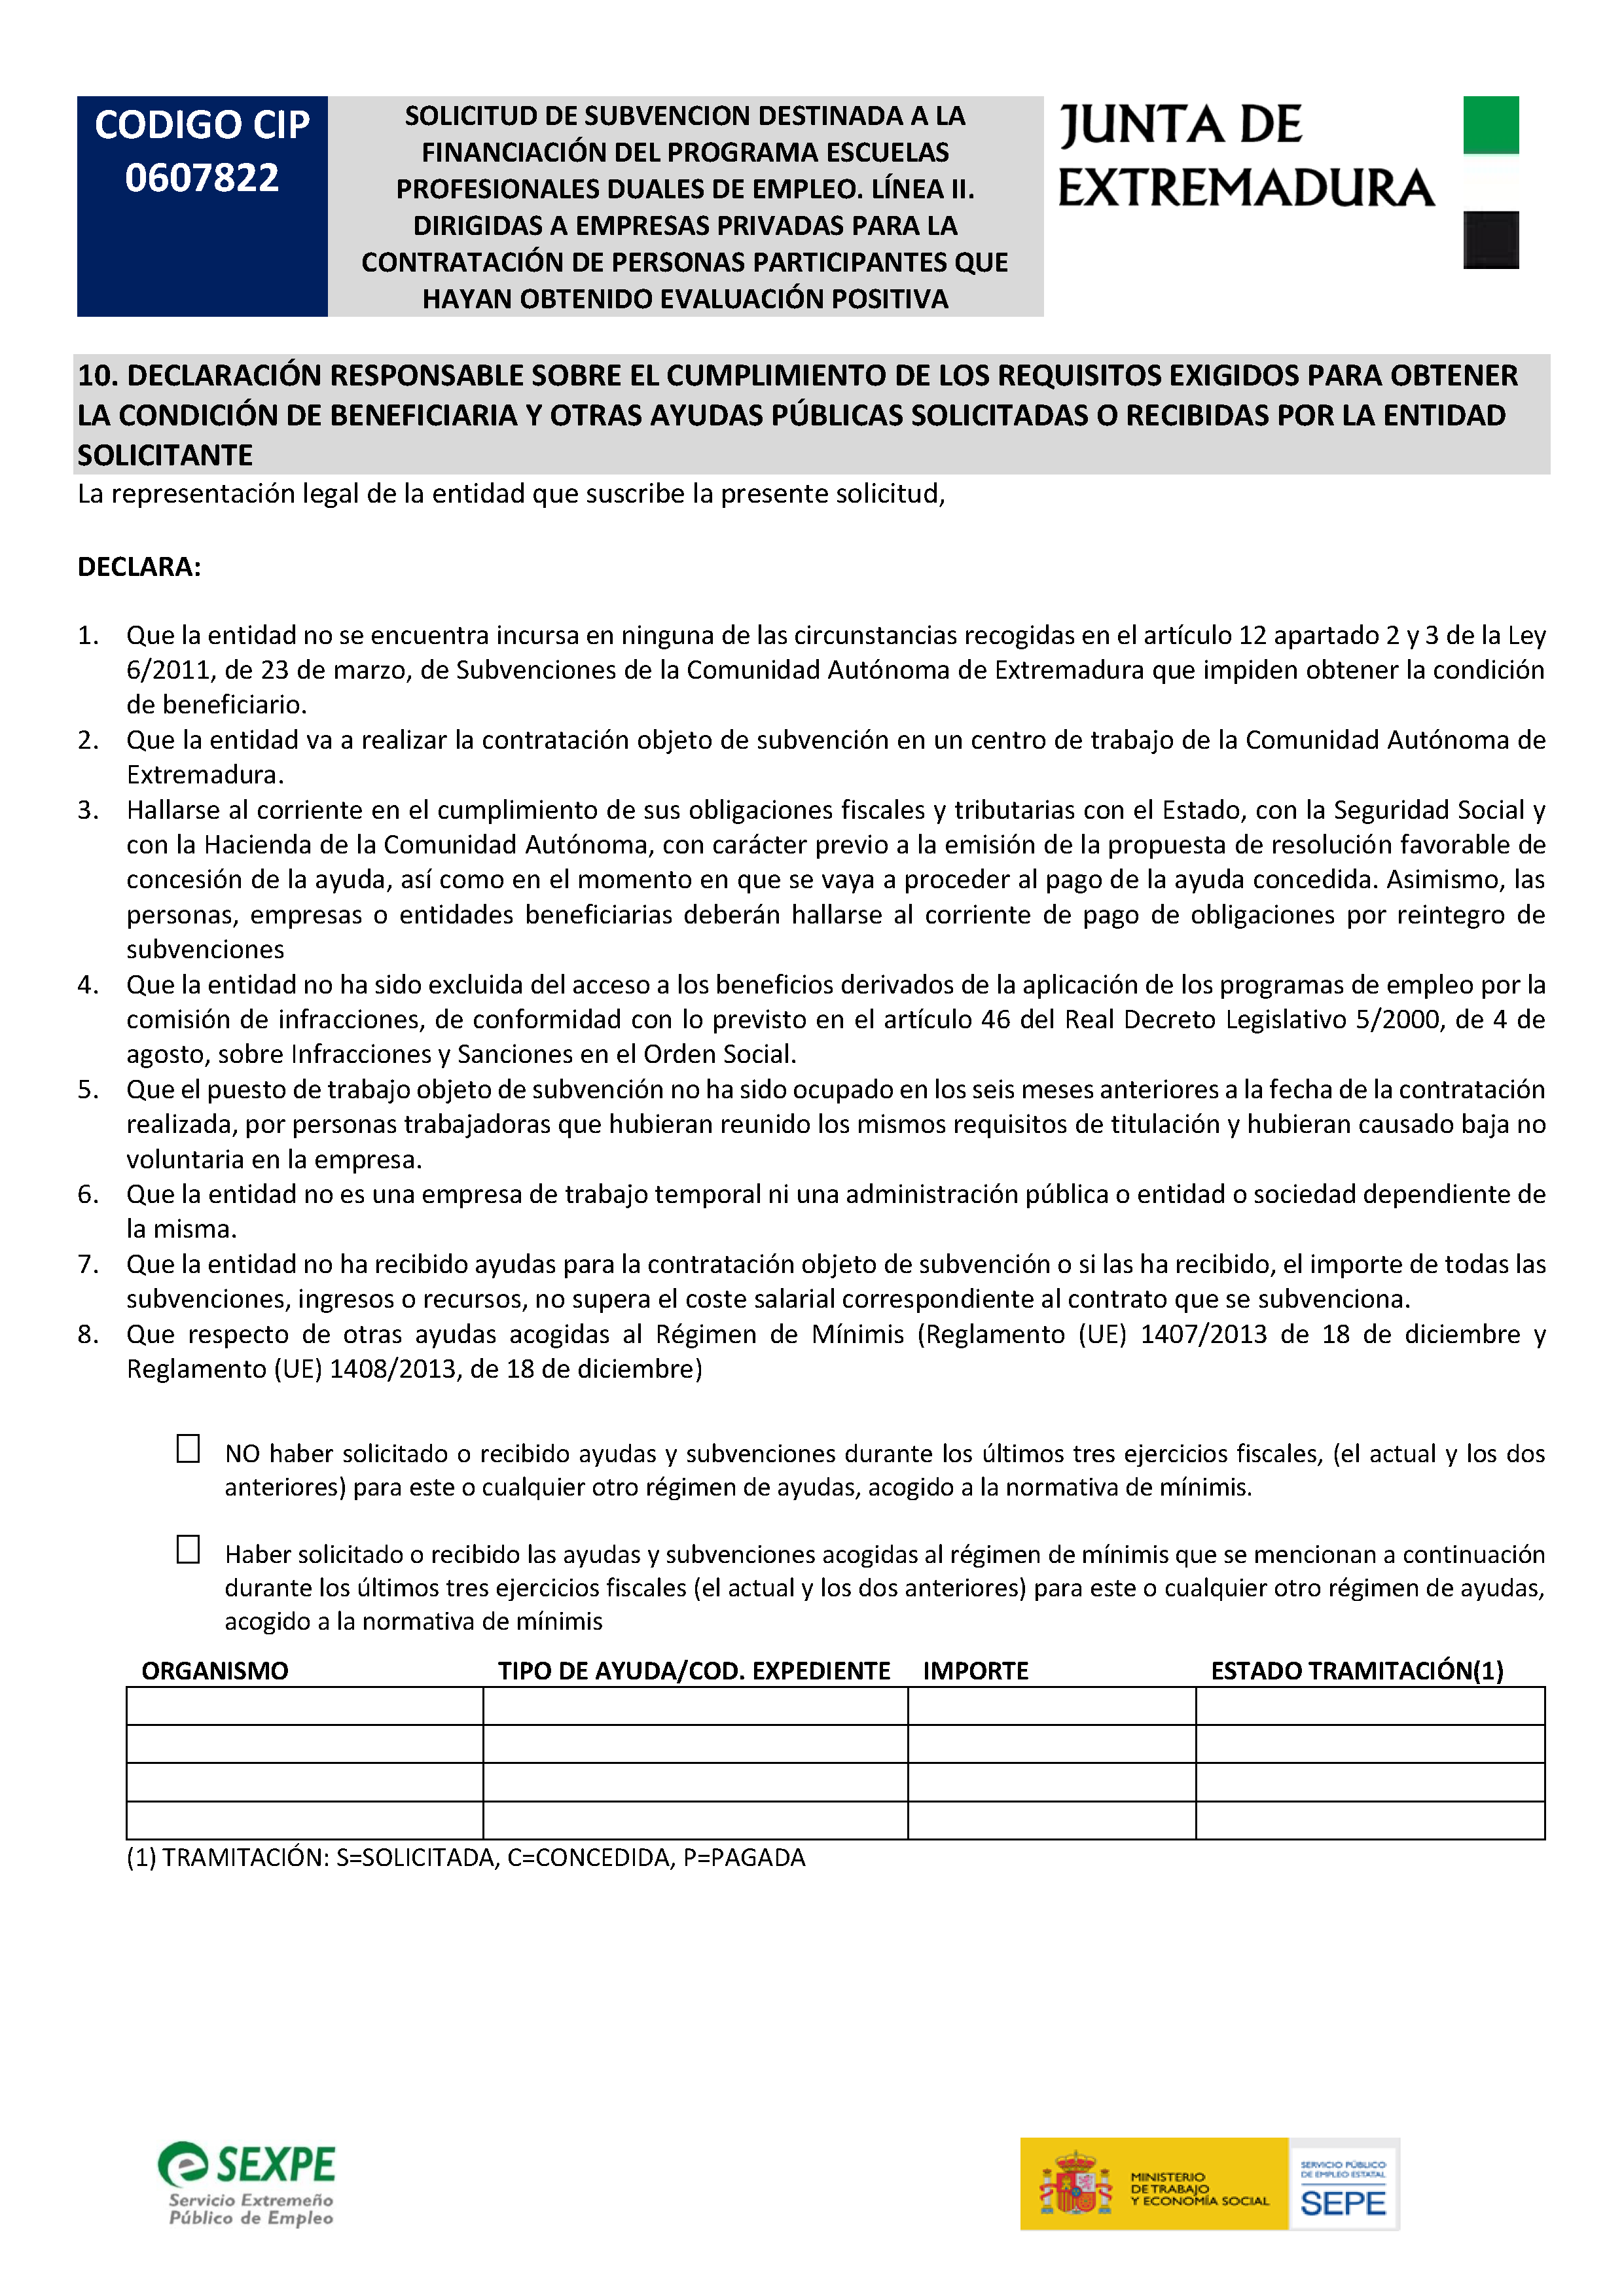 SOLICITUD DE SUBVENCIÃ“N DESTINADA A LA FINANCIACIÃ“N DEL PROGRAMA ESCUELAS PROFESIONALES DUALES DE EMPLEO. LÃ�NEA II Pag 5